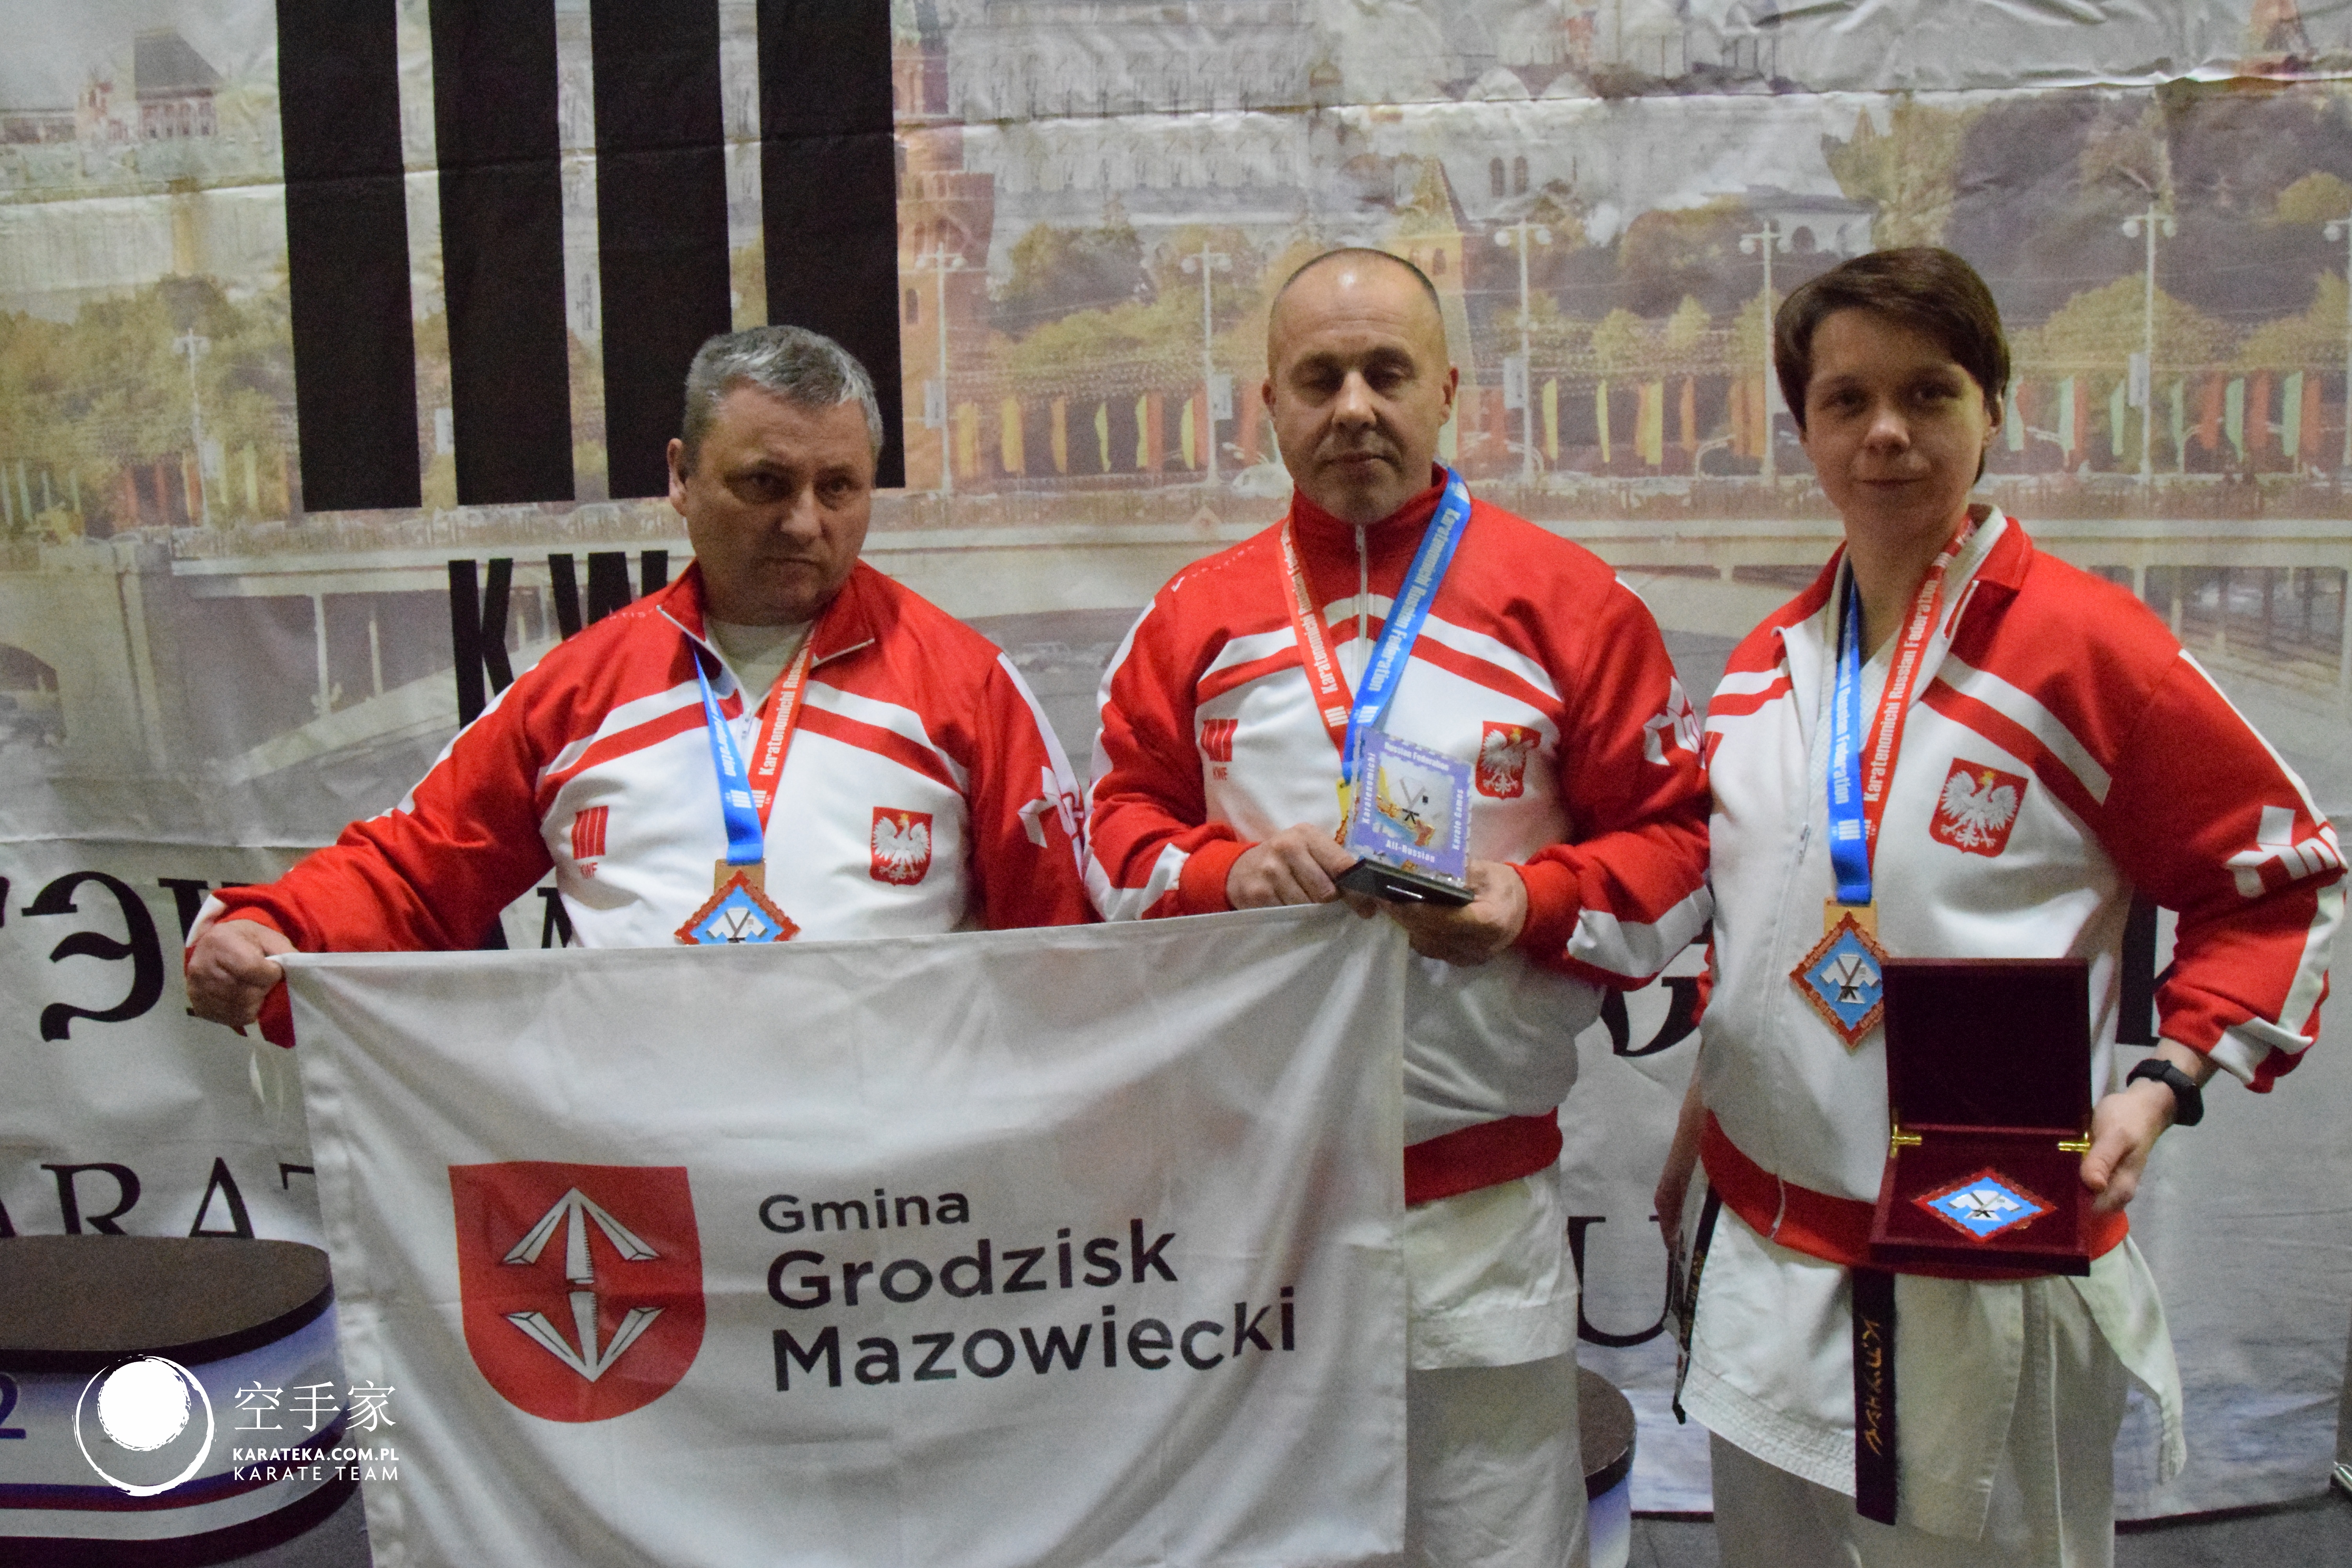 9 Wszechrosyjskie Mistrzostwa Karate KWF